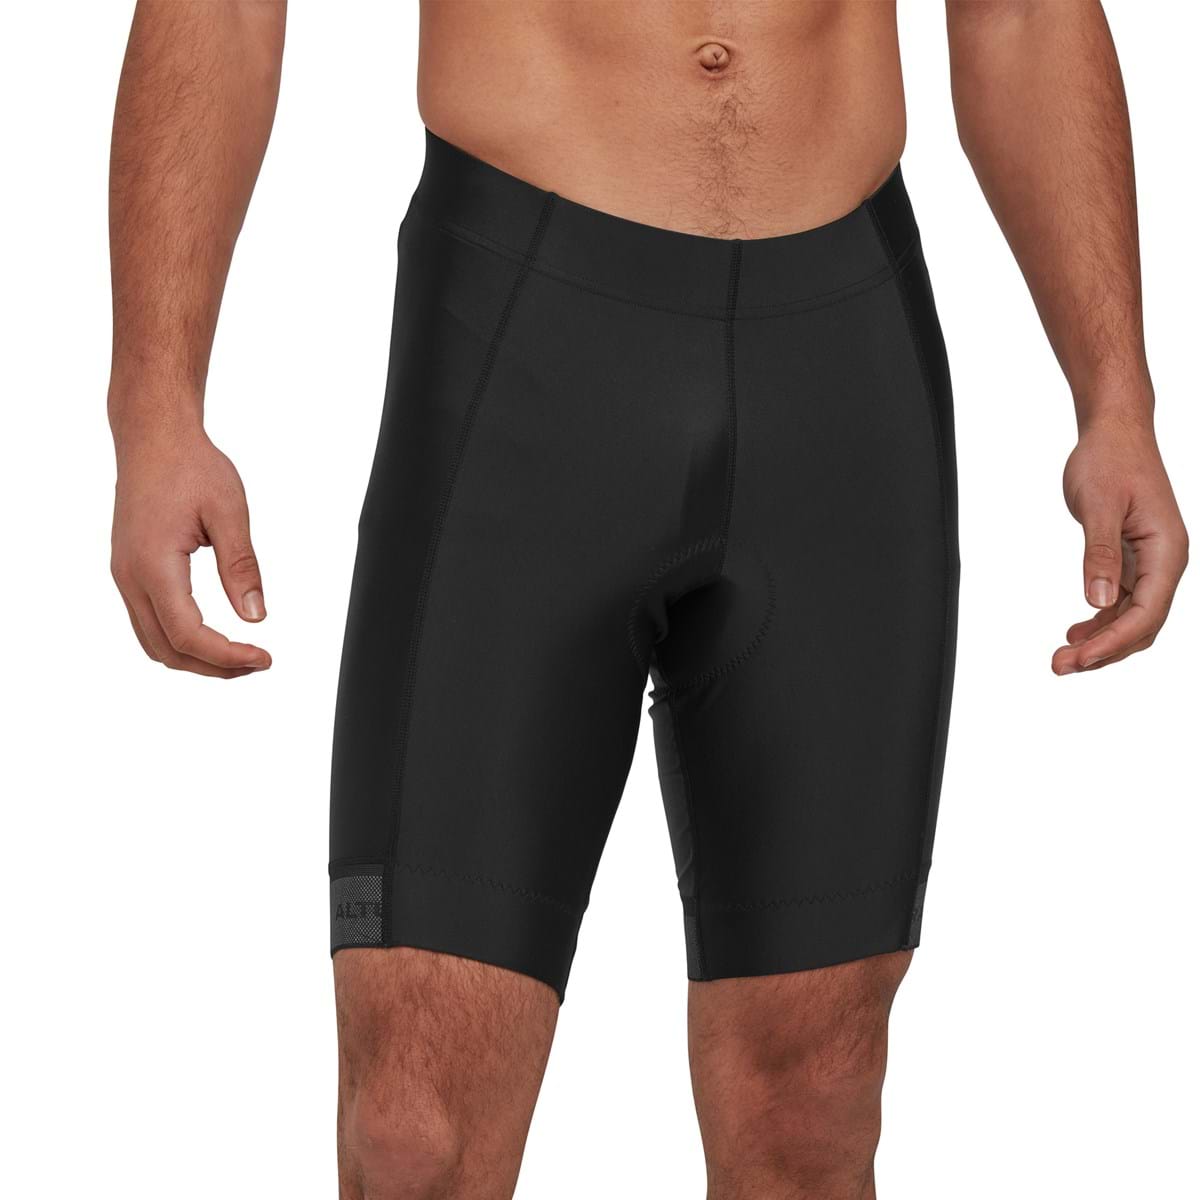 Altura Progel Plus Sans Bretelles - Cycling shorts - Men's